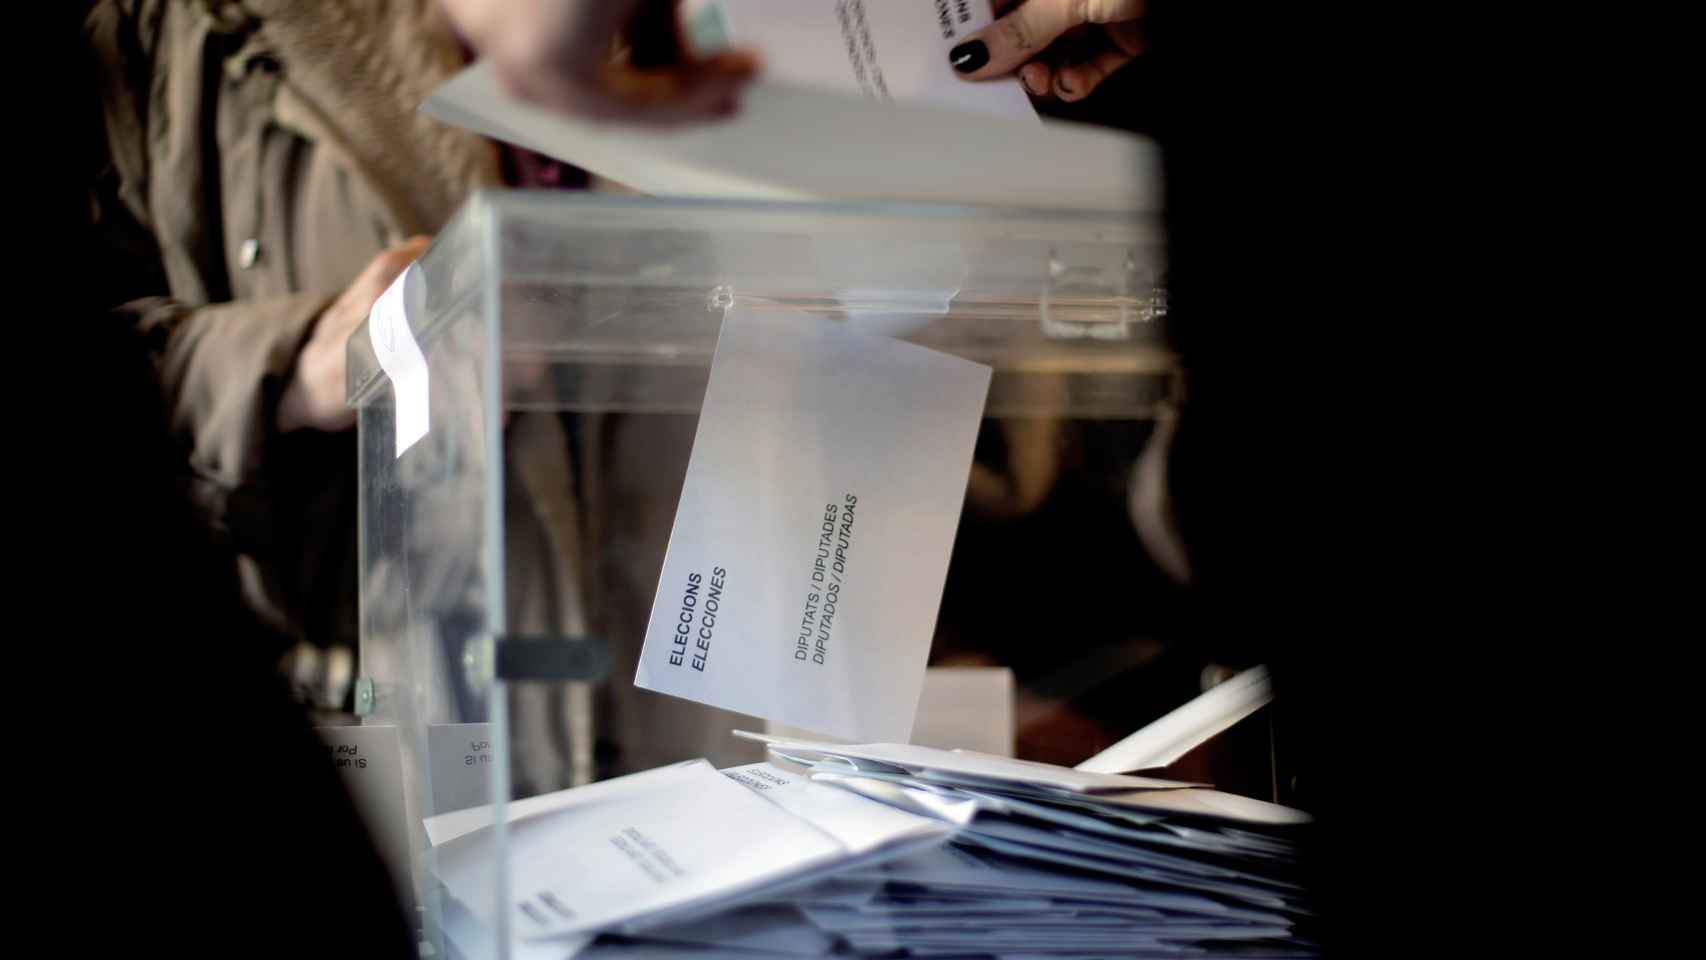 Una urna electoral en una imagen de archivo.